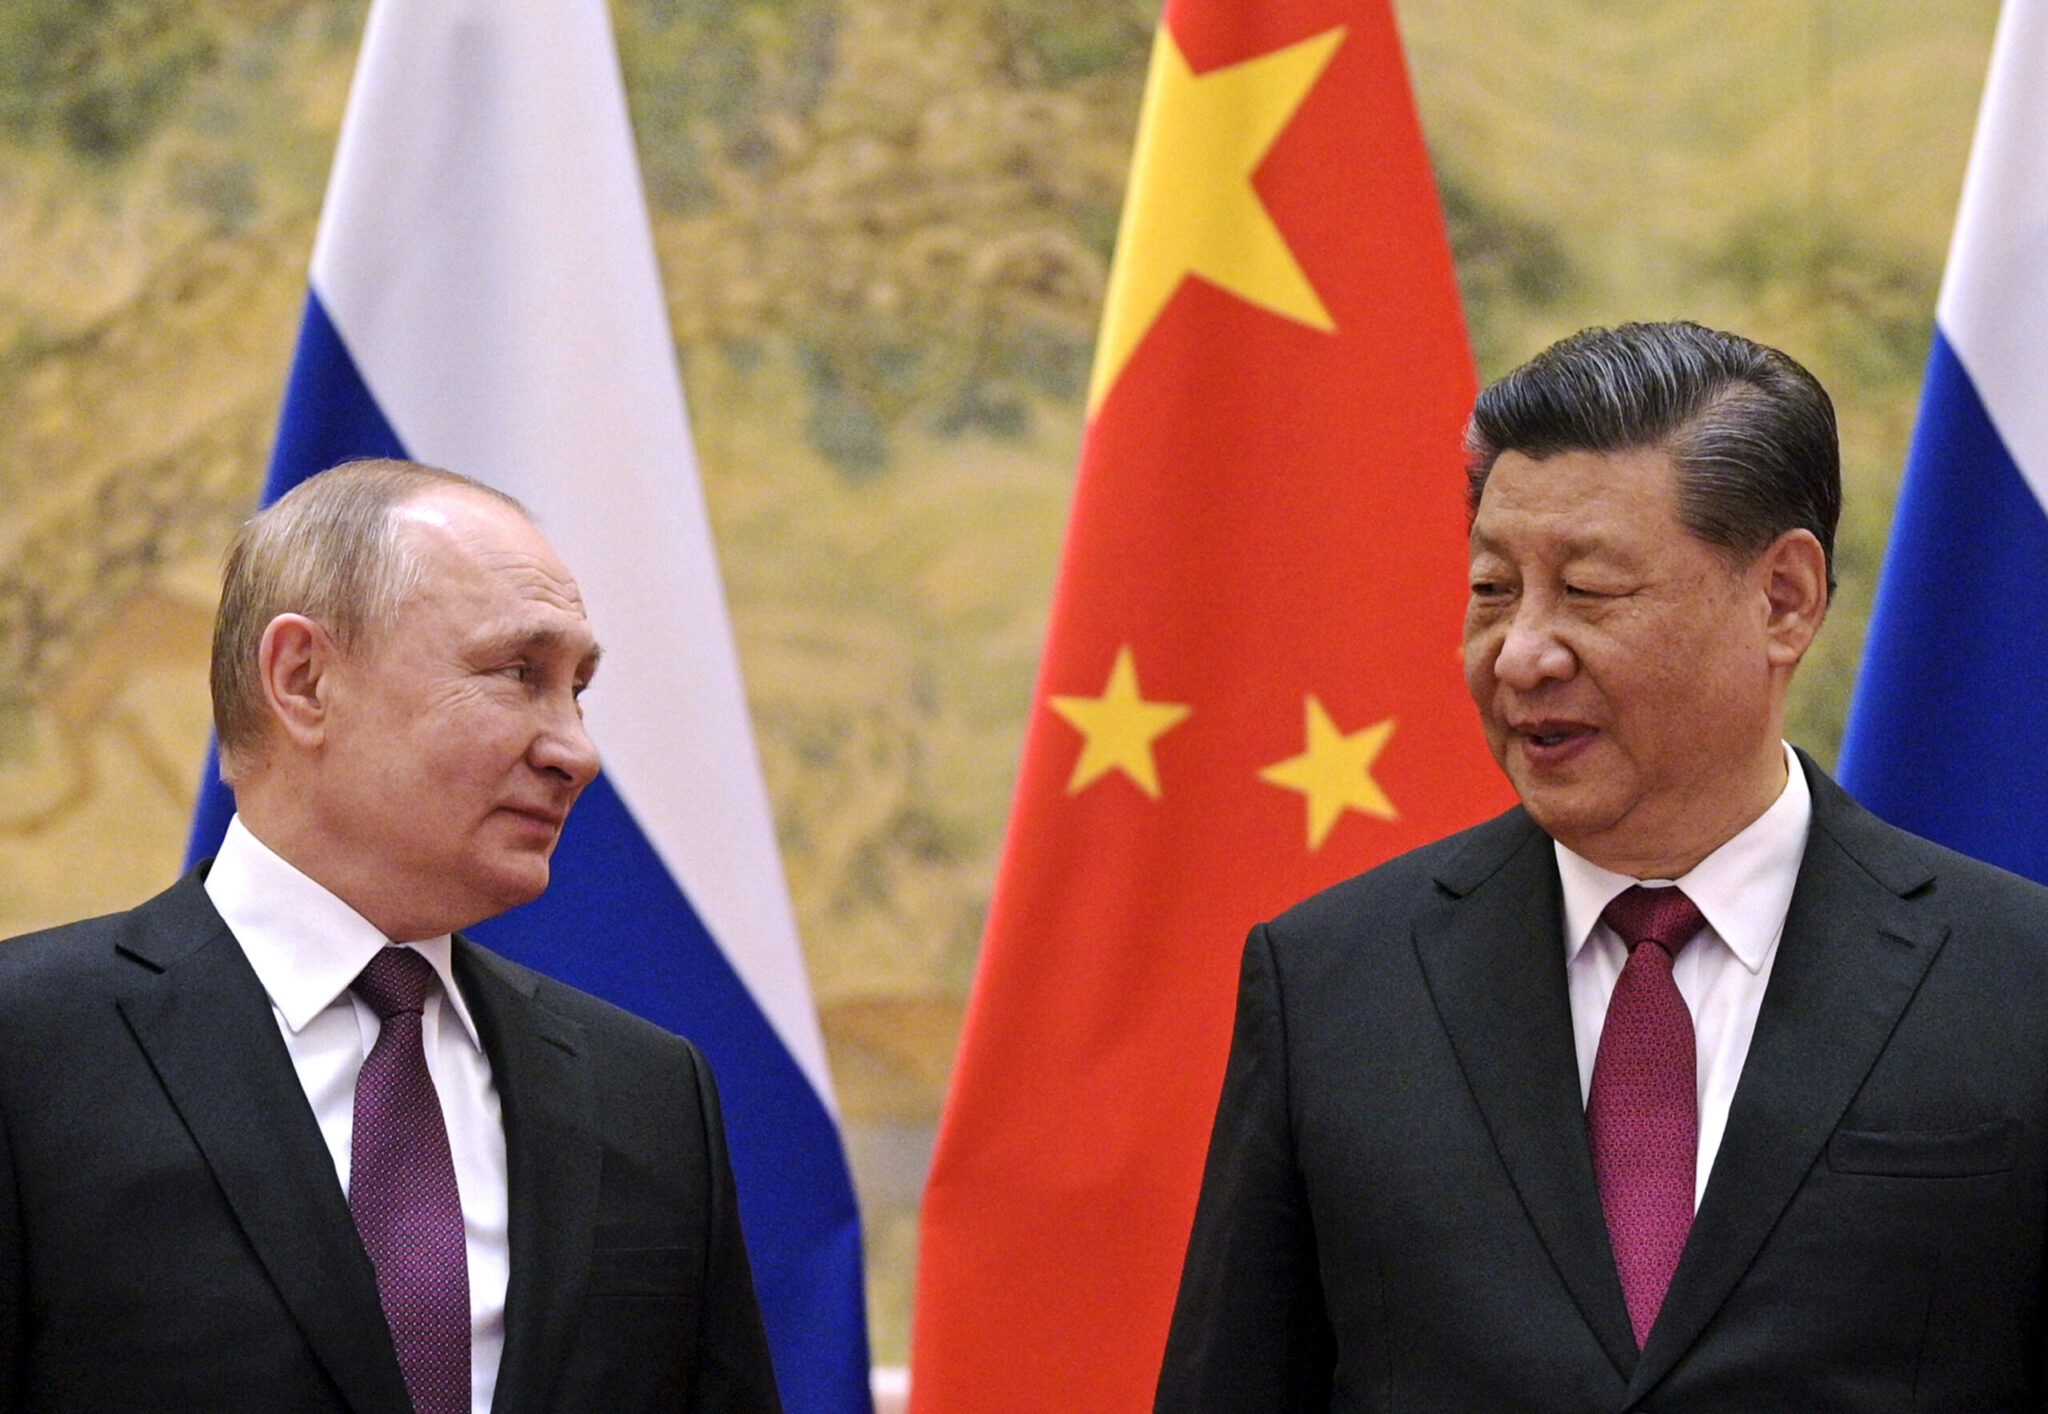 Στη Μόσχα ο Πρόεδρος της Κίνας για να προωθήσει «συνεργασία και ειρήνη»